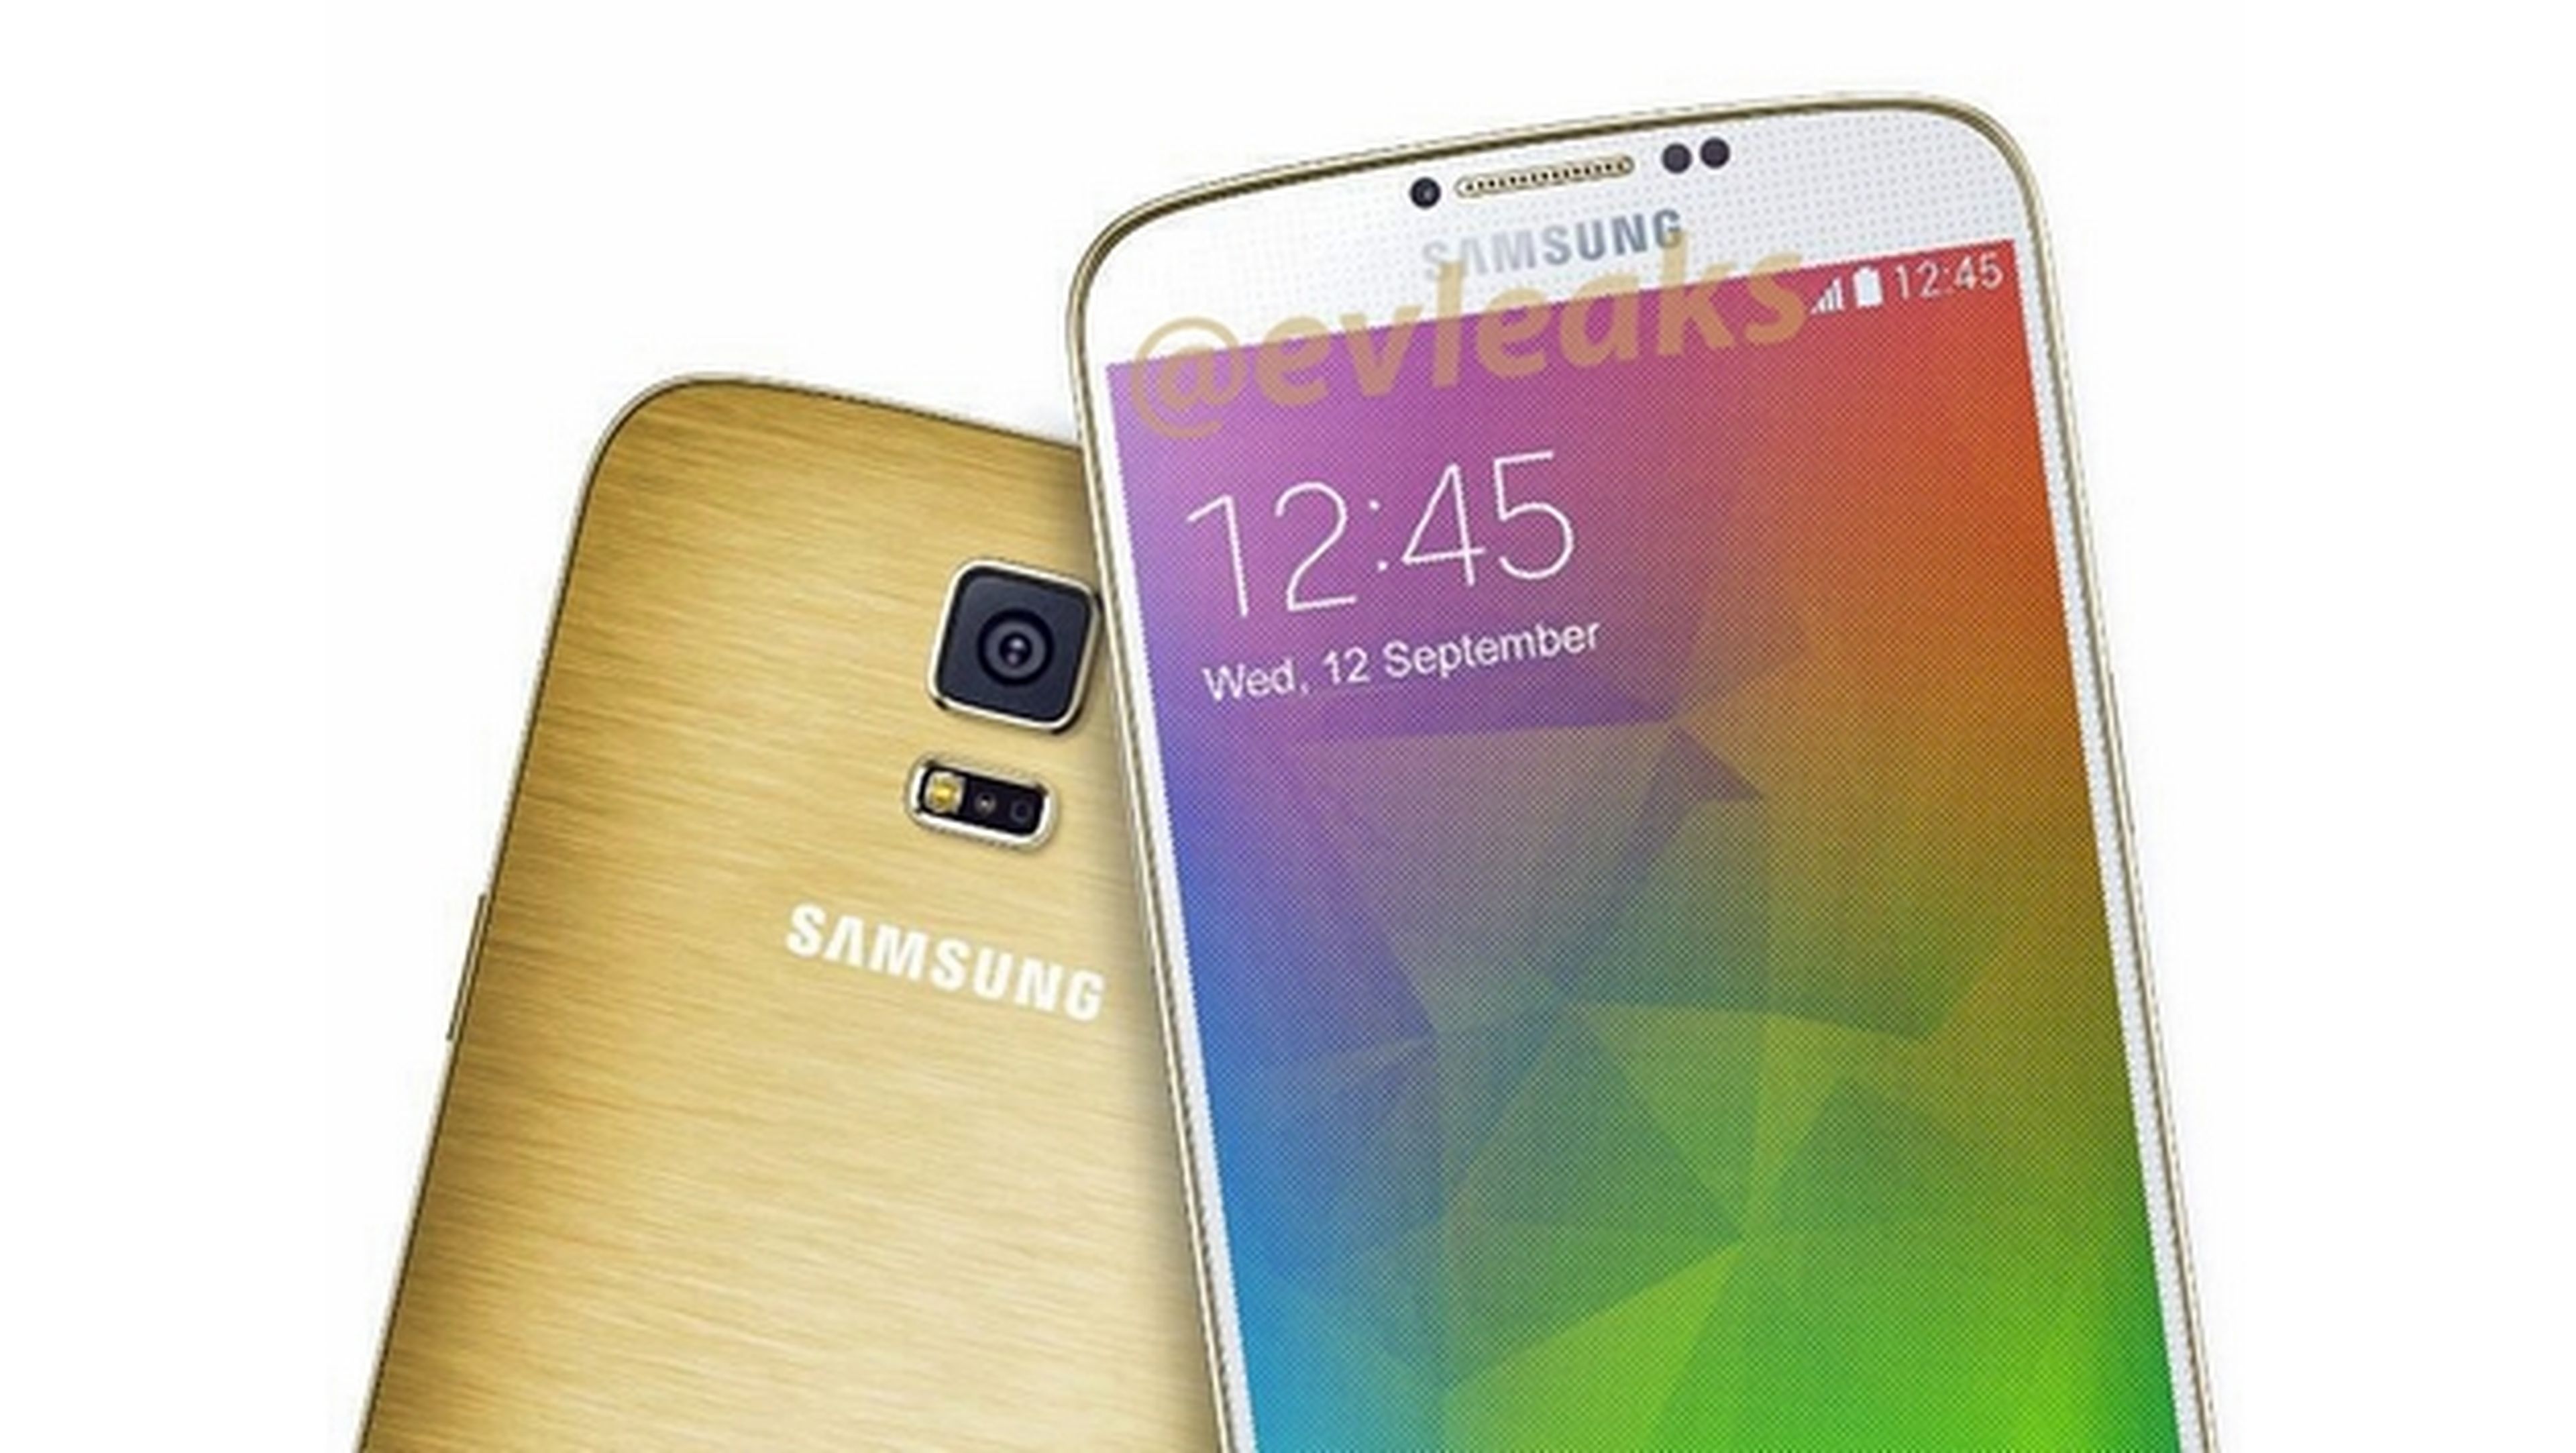 Filtrado render del Samsung Galaxy F con carcasa dorada.